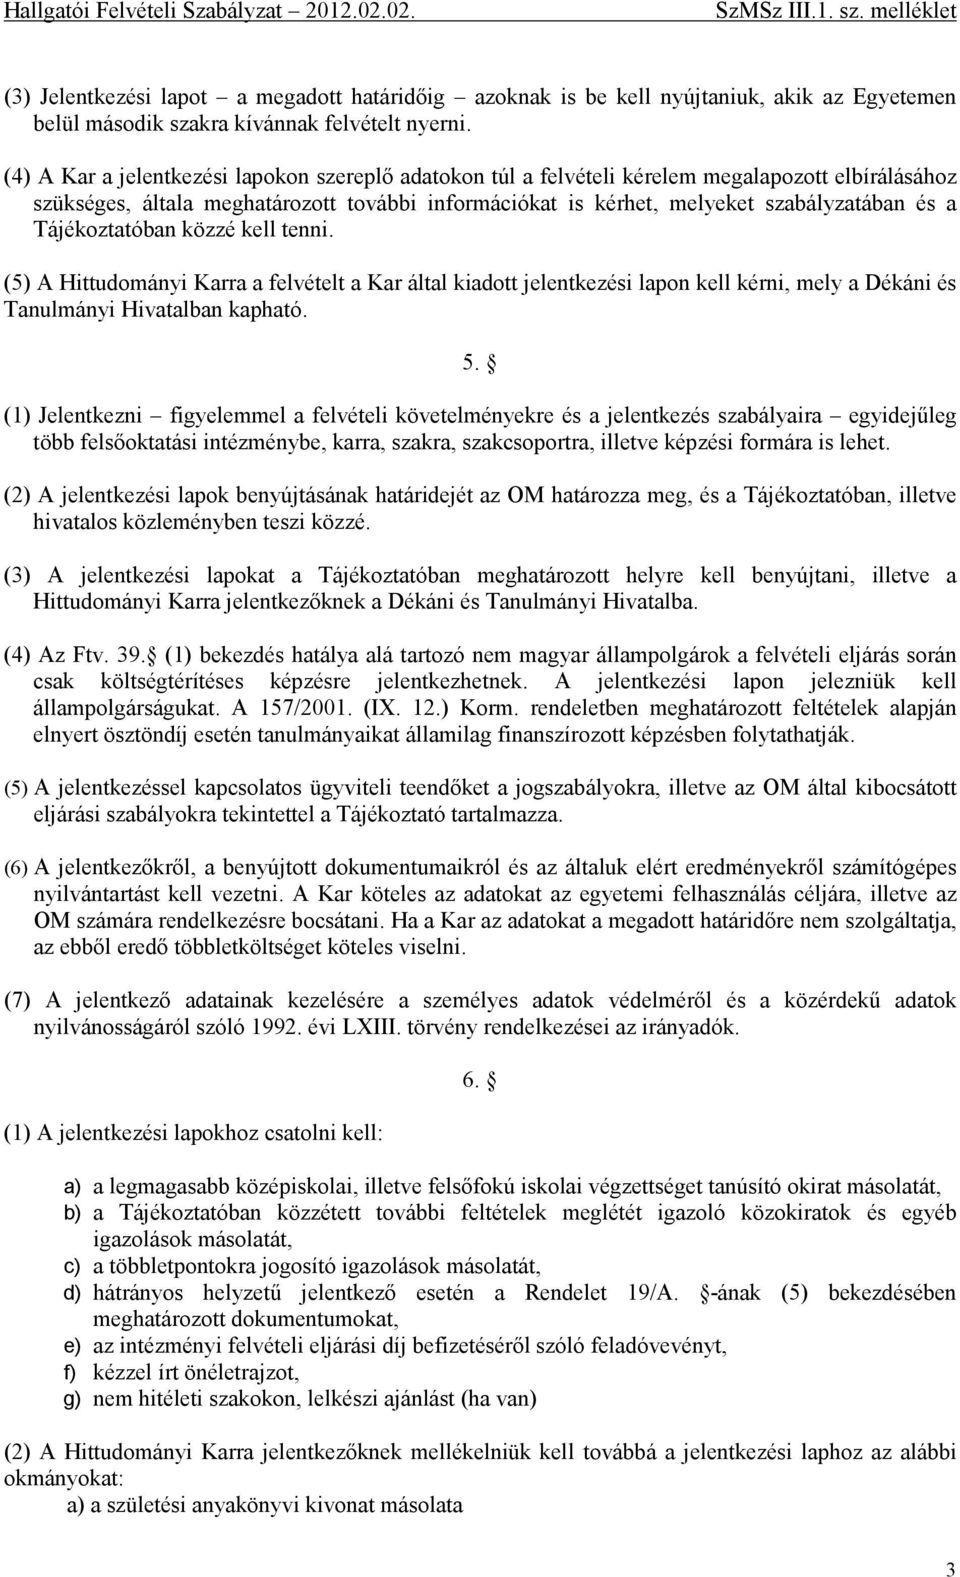 Hallgatói Felvételi Szabályzat. (Az SzMSz III.1. számú melléklete) - PDF  Ingyenes letöltés